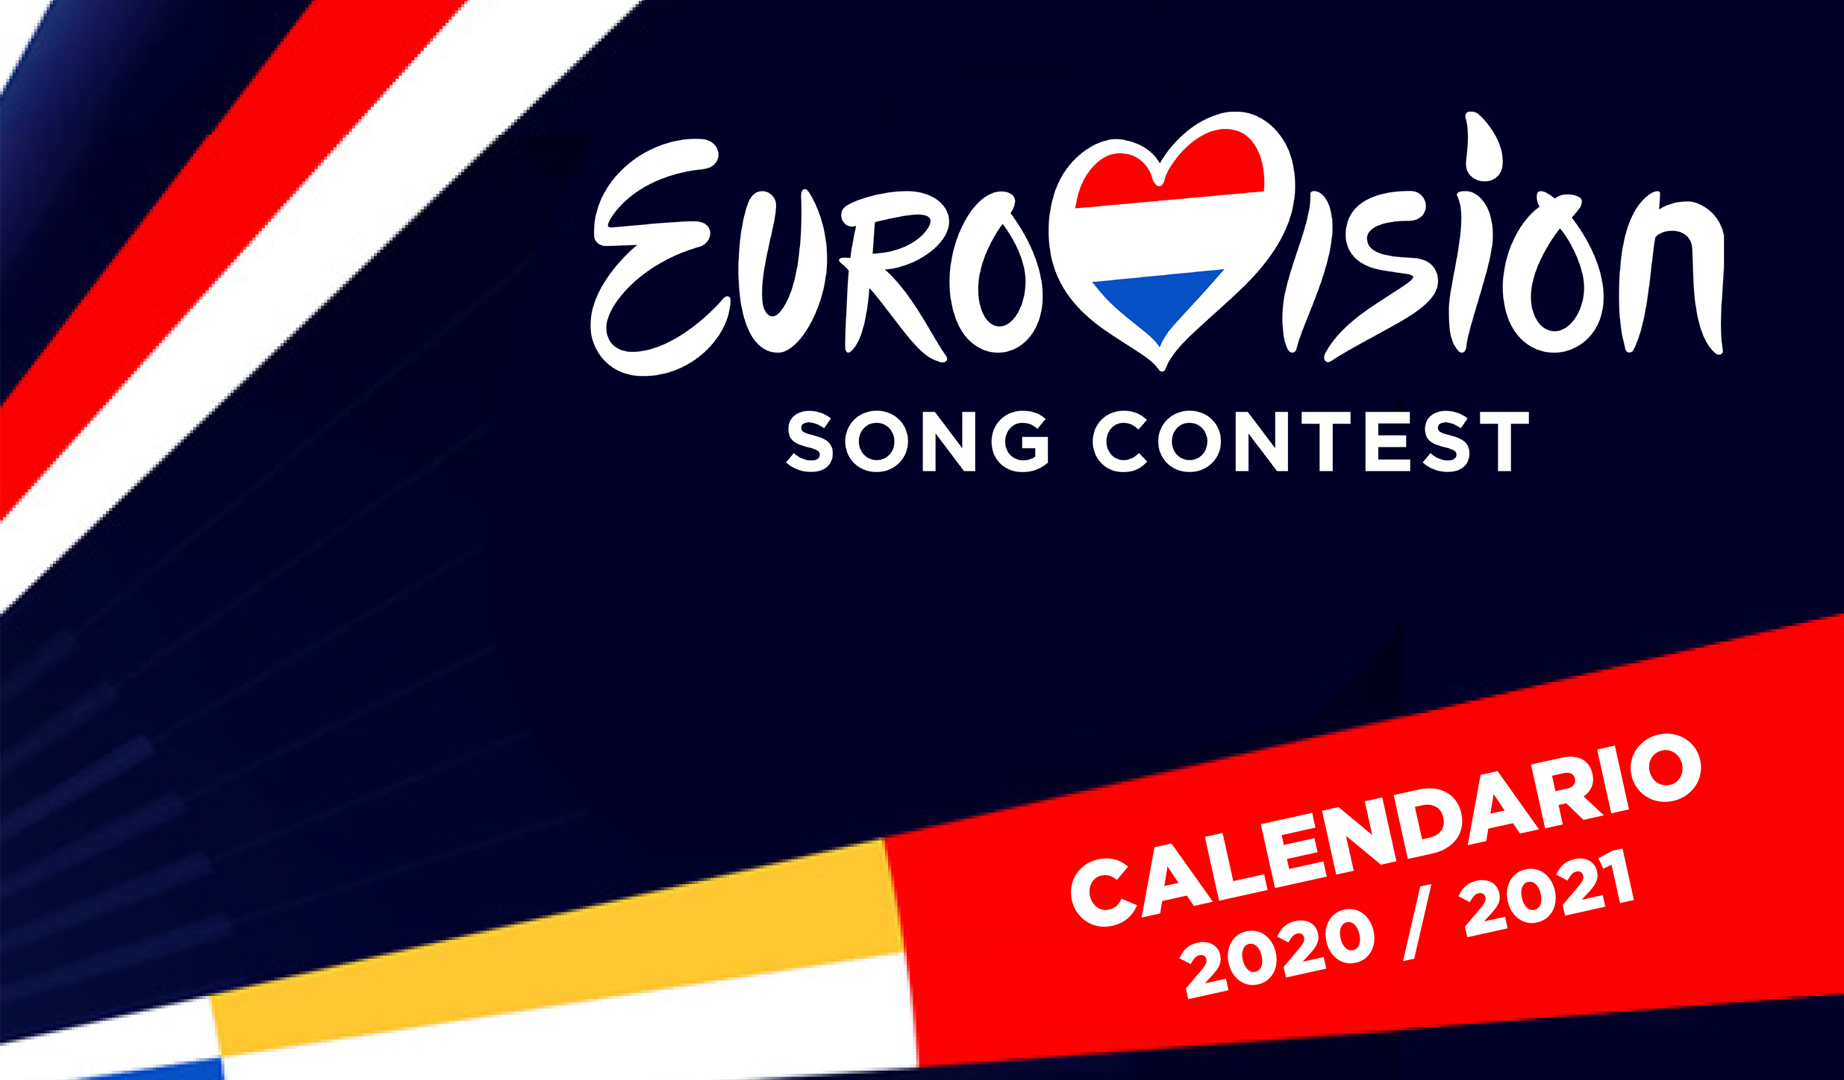 ¡El calendario de Eurovision 2021 ya está aqui!